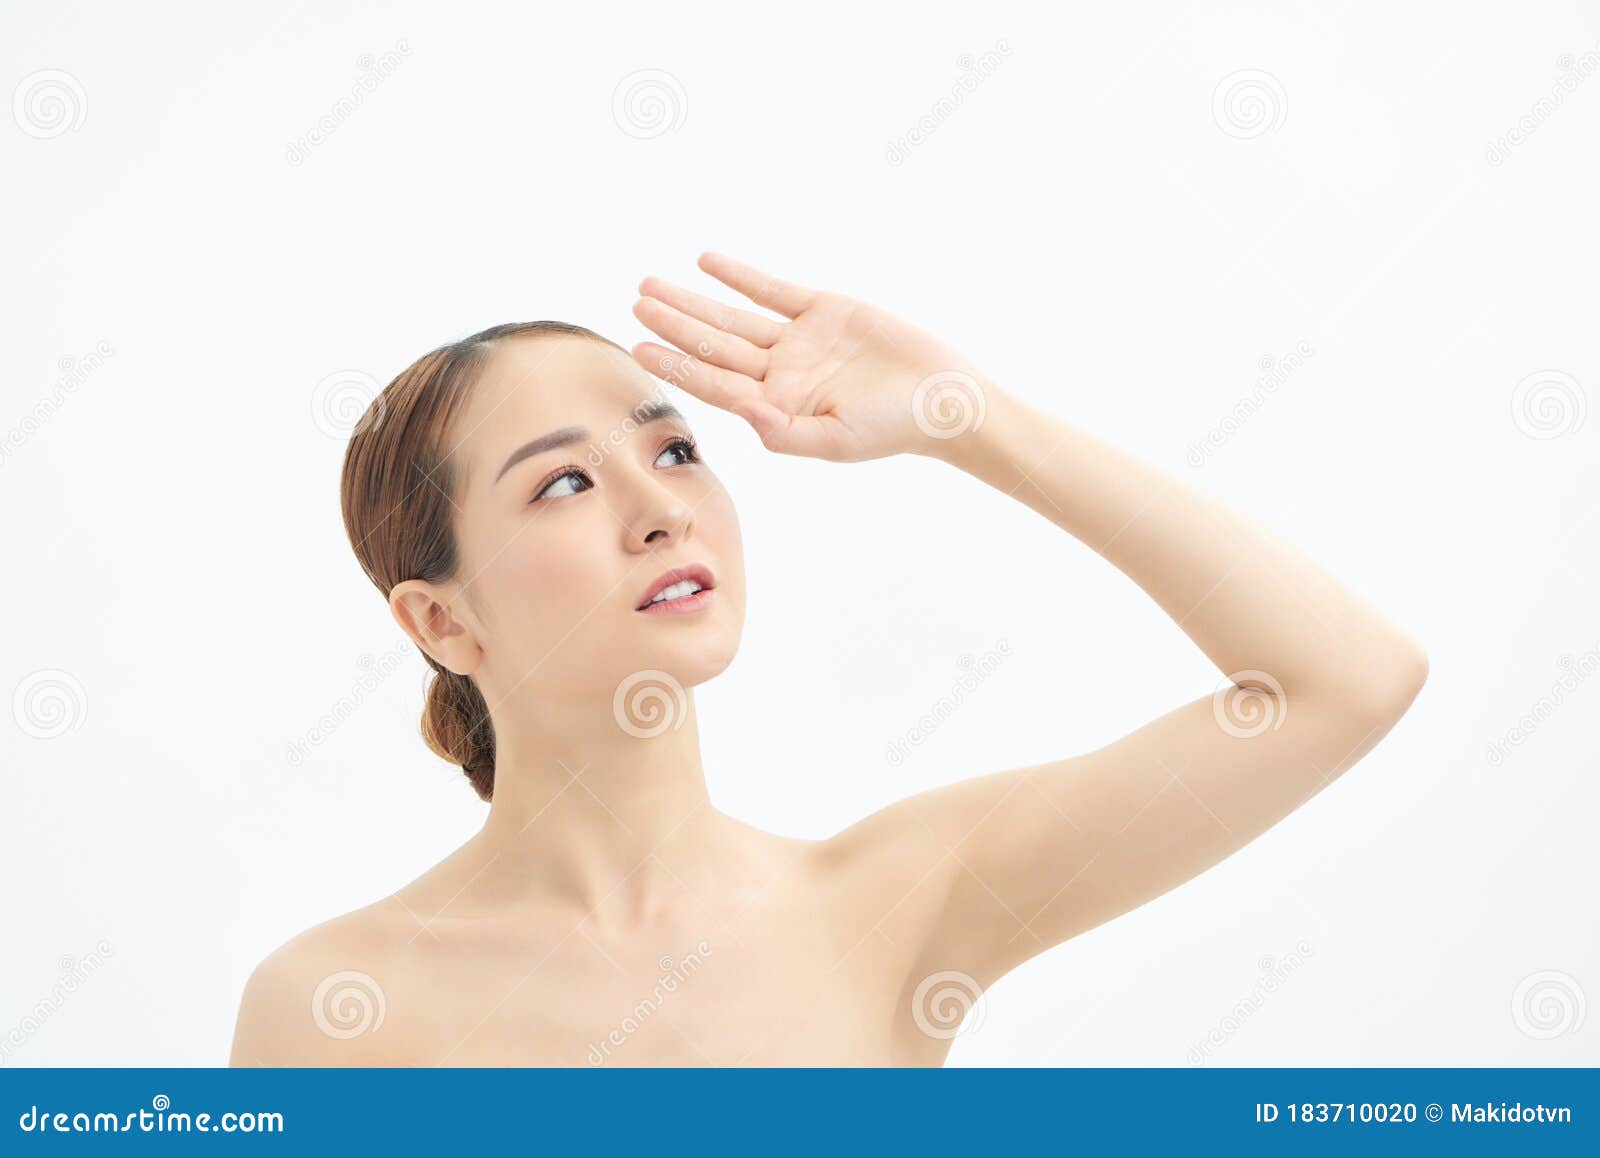 胶原眼垫的漂亮裸体亚洲女性 库存照片. 图片 包括有 快乐, 柔软, 空白, 招标, 健康, 成人, 裸体 - 180293510